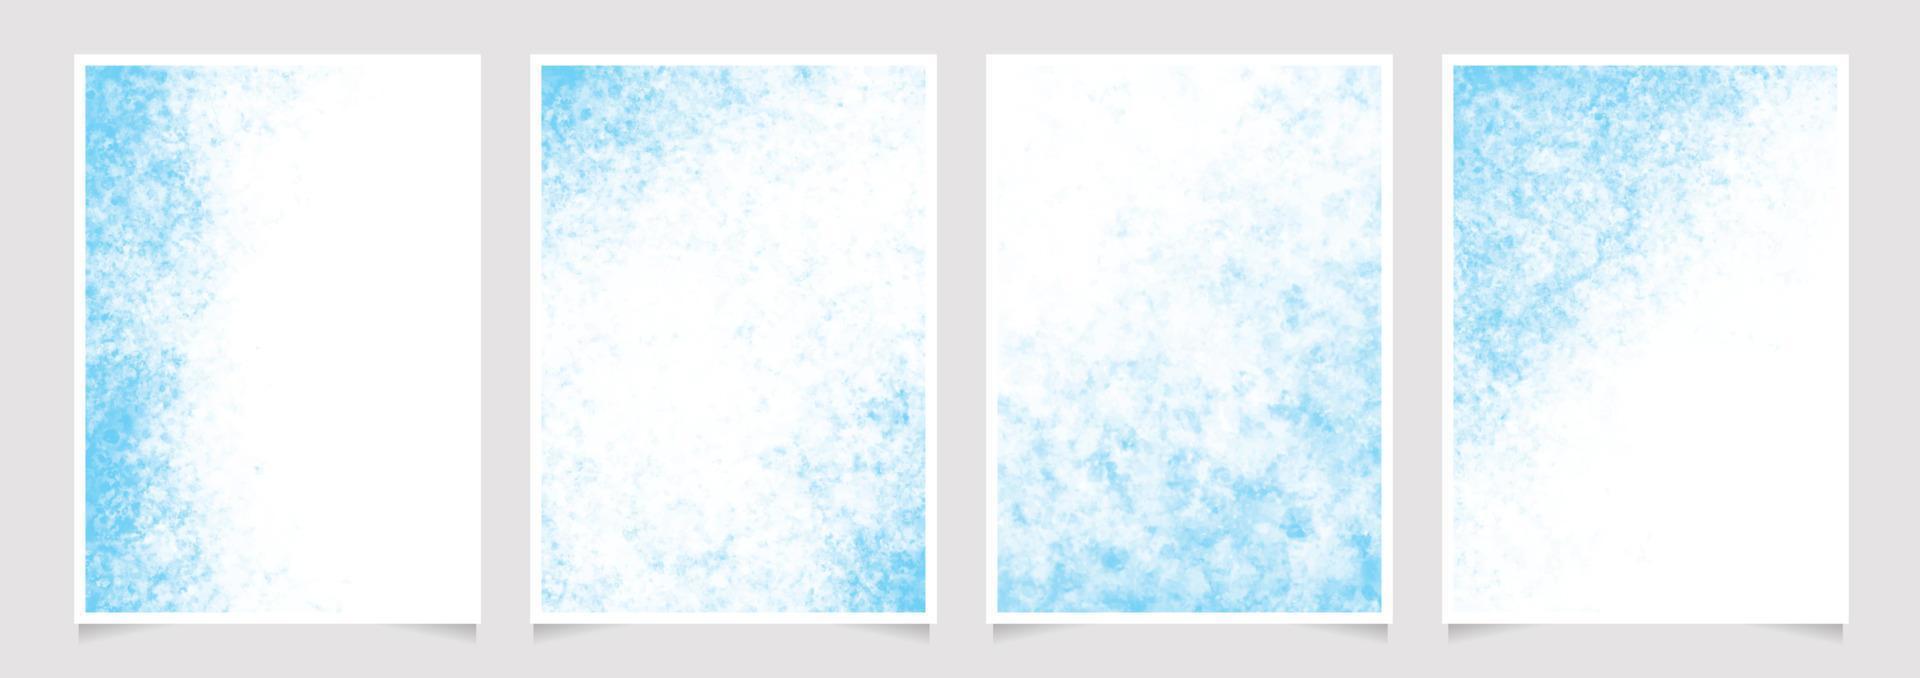 blauwe penseelstreek aquarel splash achtergrond voor bruiloft of verjaardag uitnodigingskaart 5x7 collectie vector